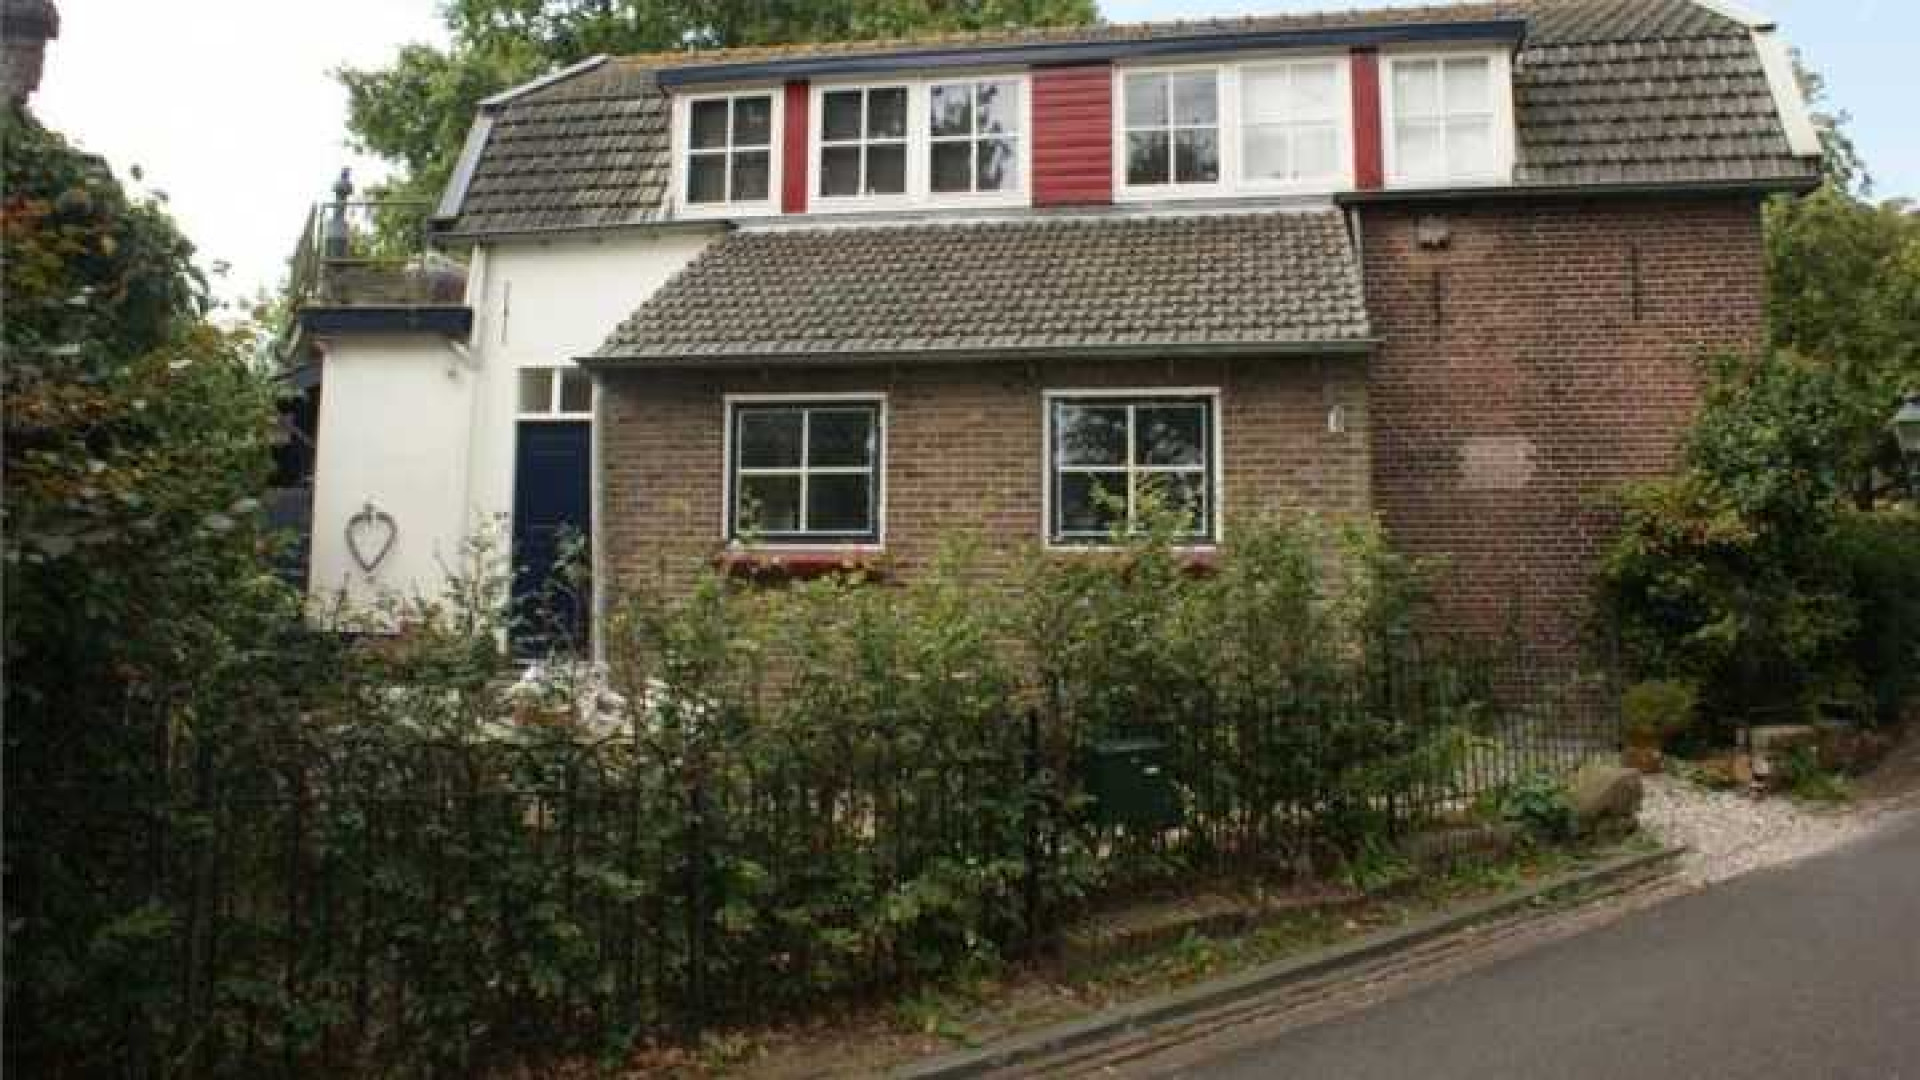 Herman van Veen zet zijn huis te koop. Zie foto's 13